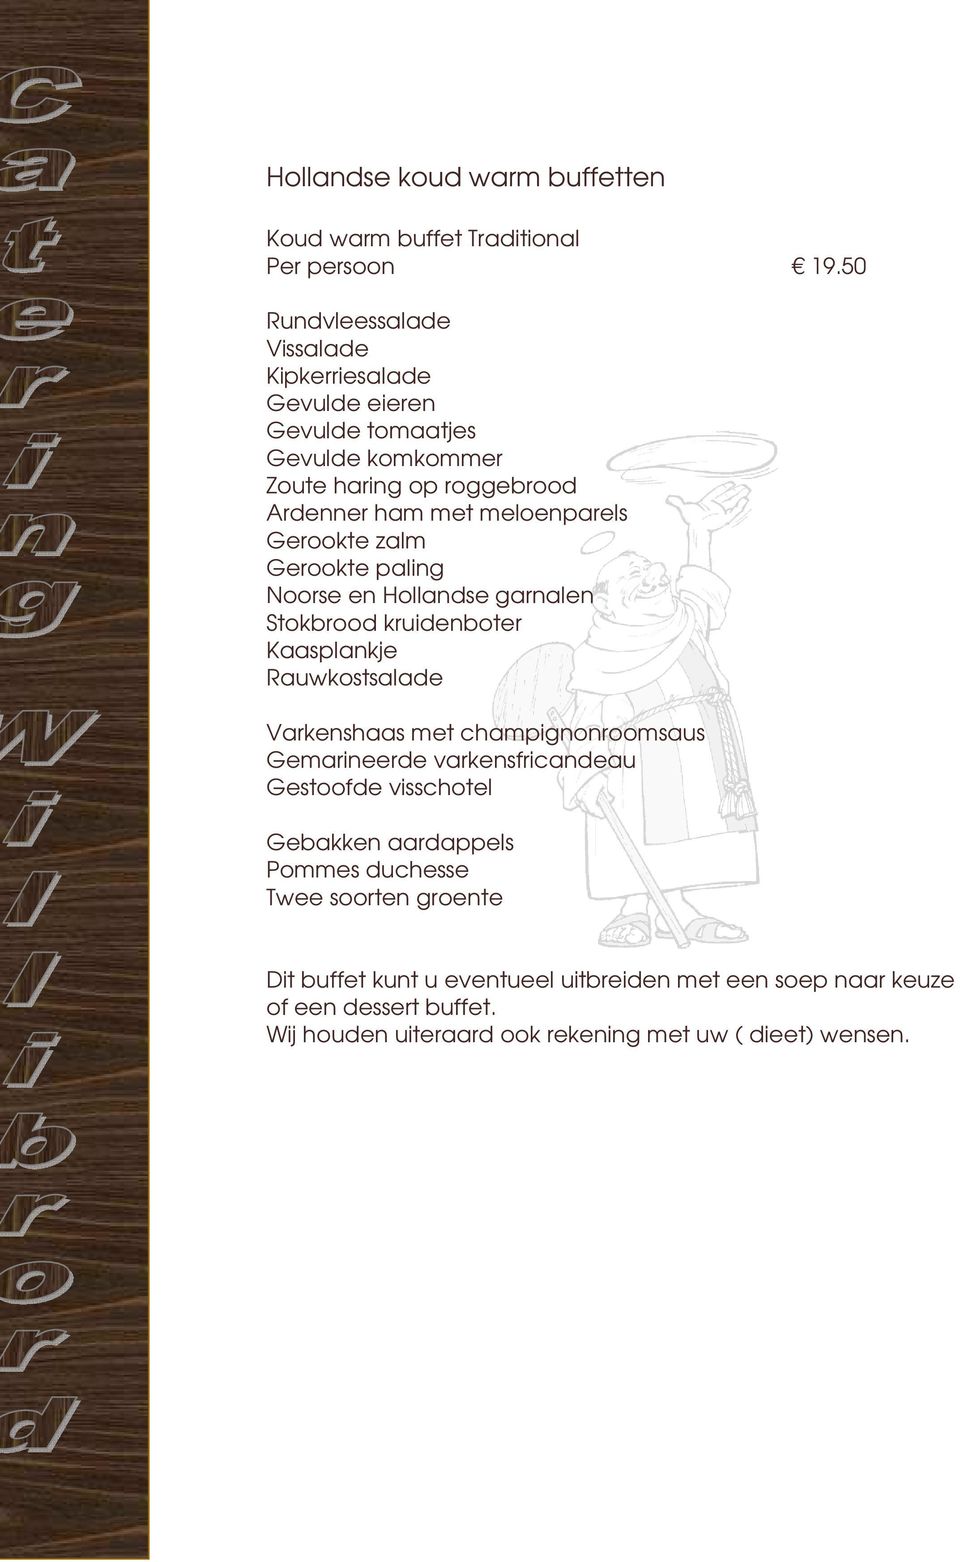 Gerookte zalm Gerookte paling Noorse en Hollandse garnalen Stokbrood kruidenboter Kaasplankje Rauwkostsalade Varkenshaas met champignonroomsaus